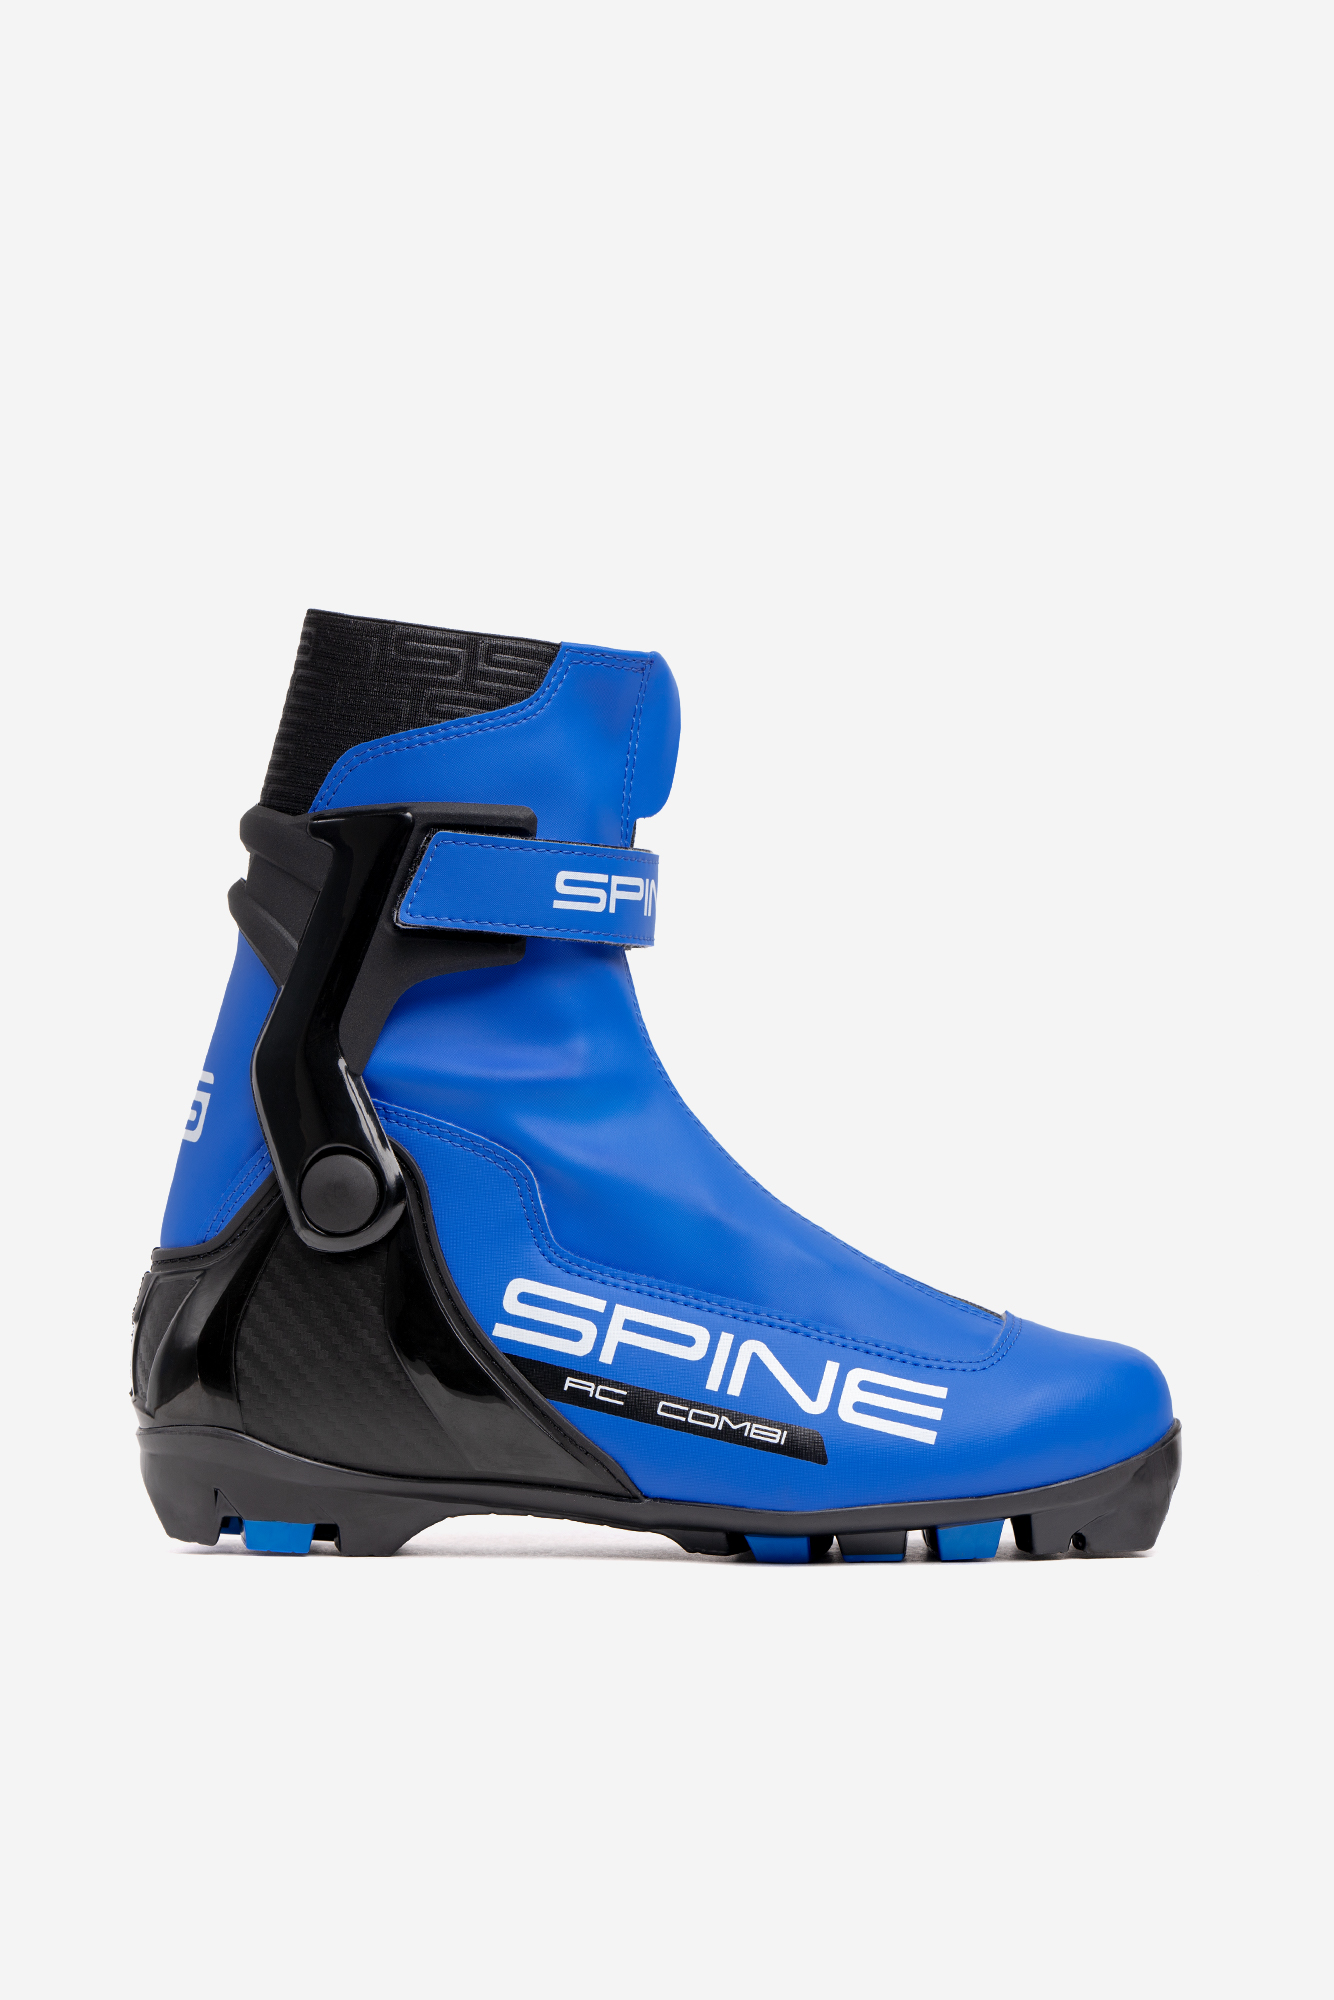 Лыжные ботинки NNN Spine RC Combi (86/1-22) синий 1334_2000